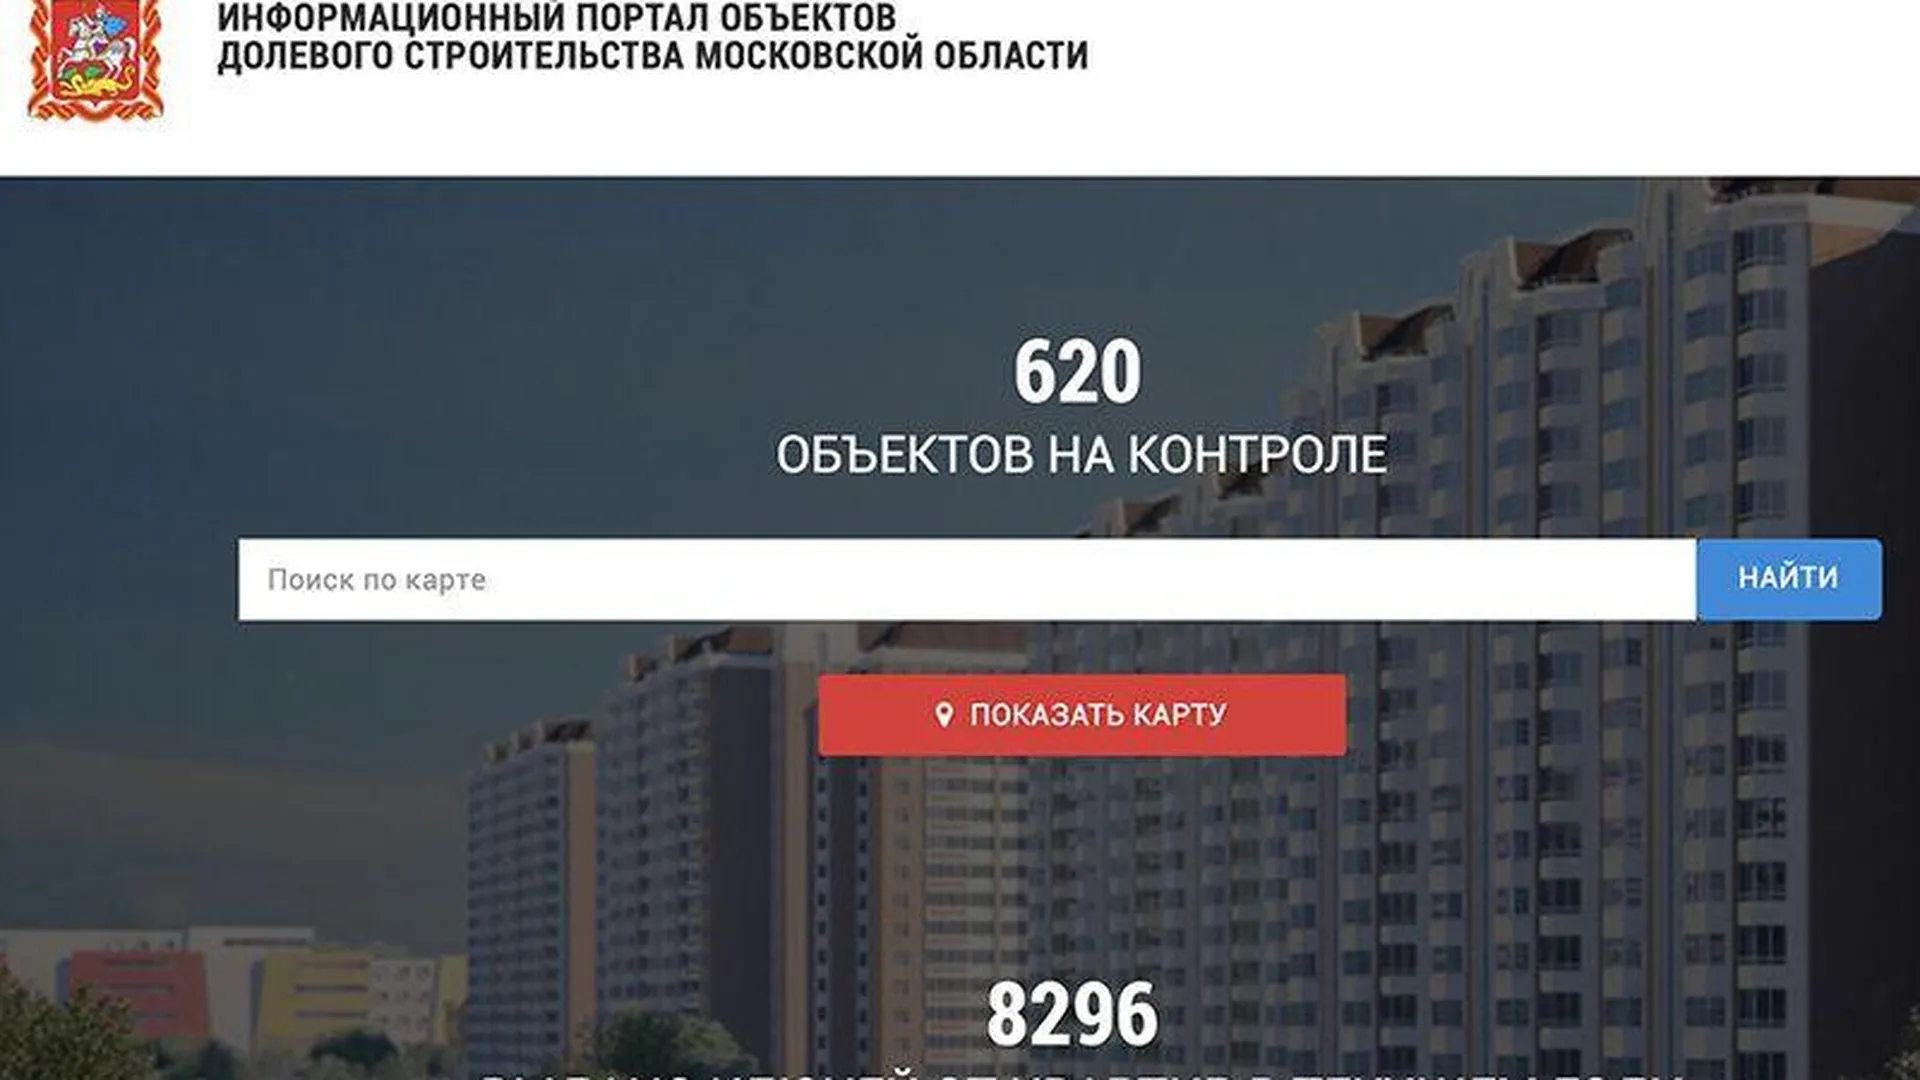 Портал ds.mosreg.ru расскажет о каждом возводимом доме в Московской области